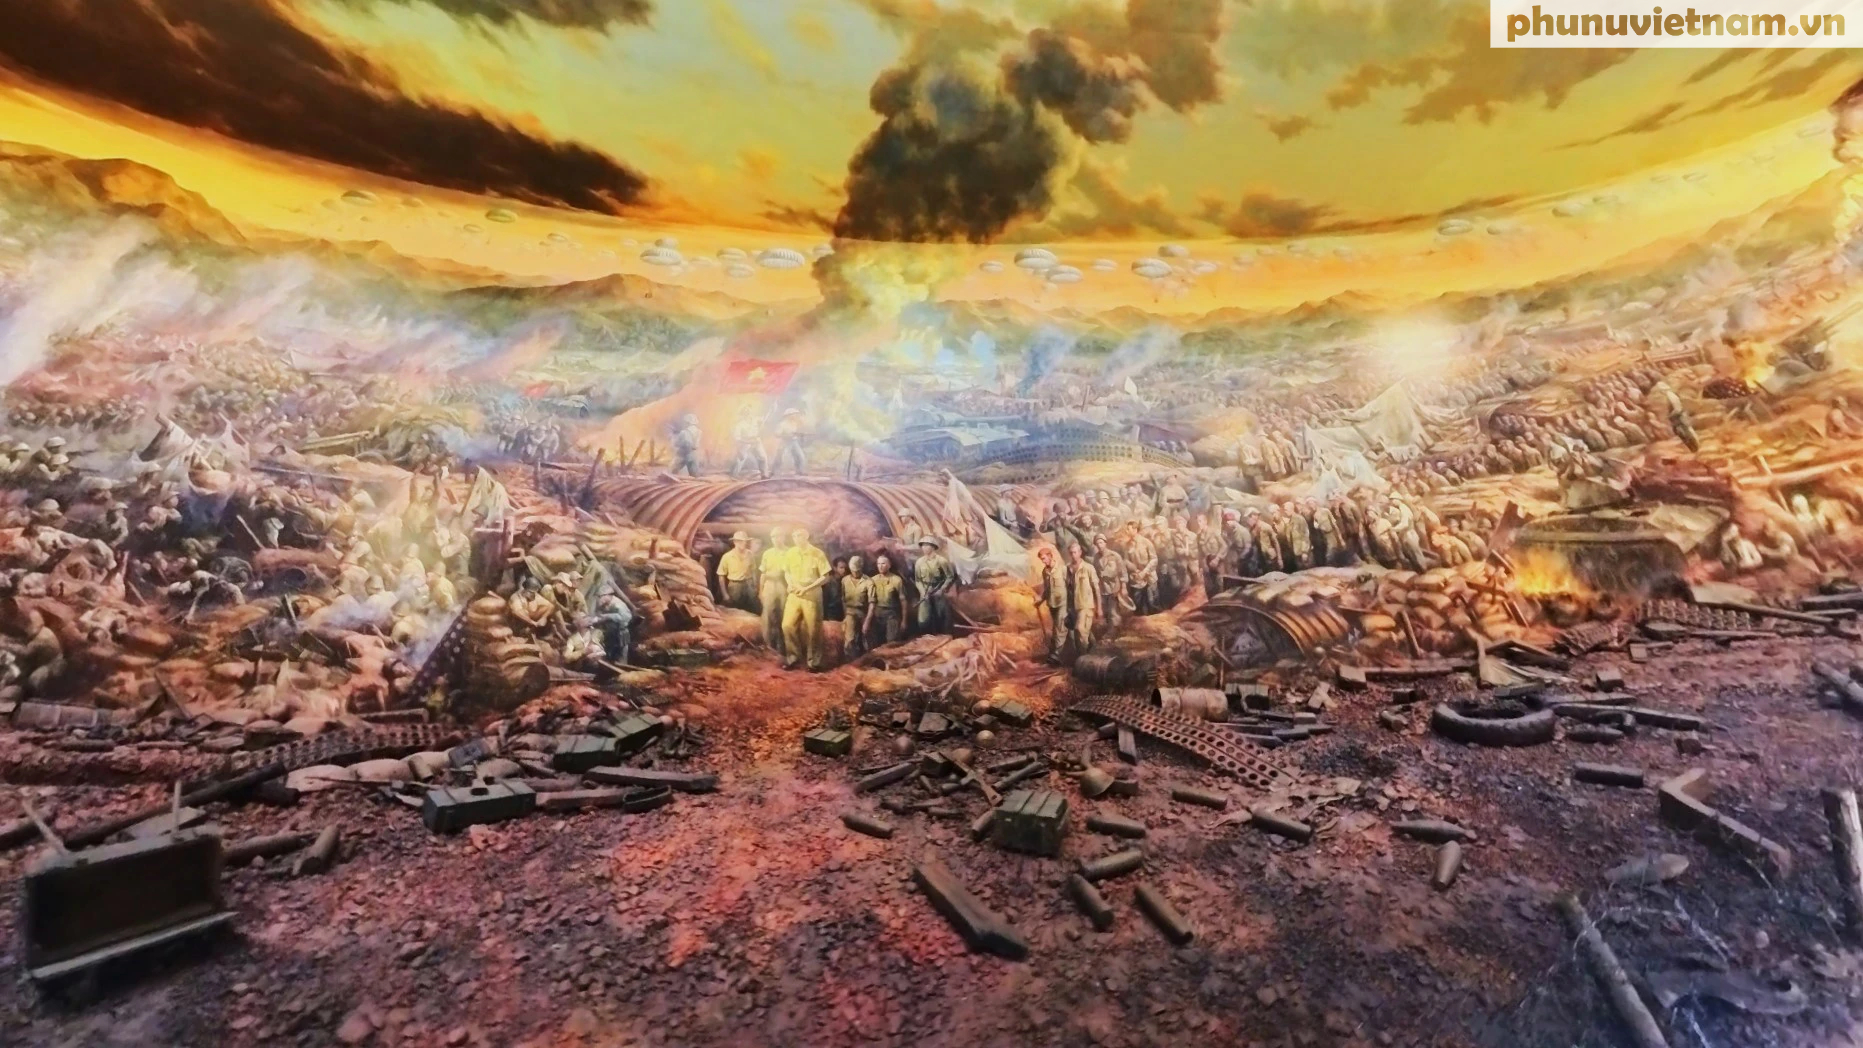 Tranh sơn dầu panorama hơn 3.000m2 về chiến dịch Điện Biên Phủ - Ảnh 2.